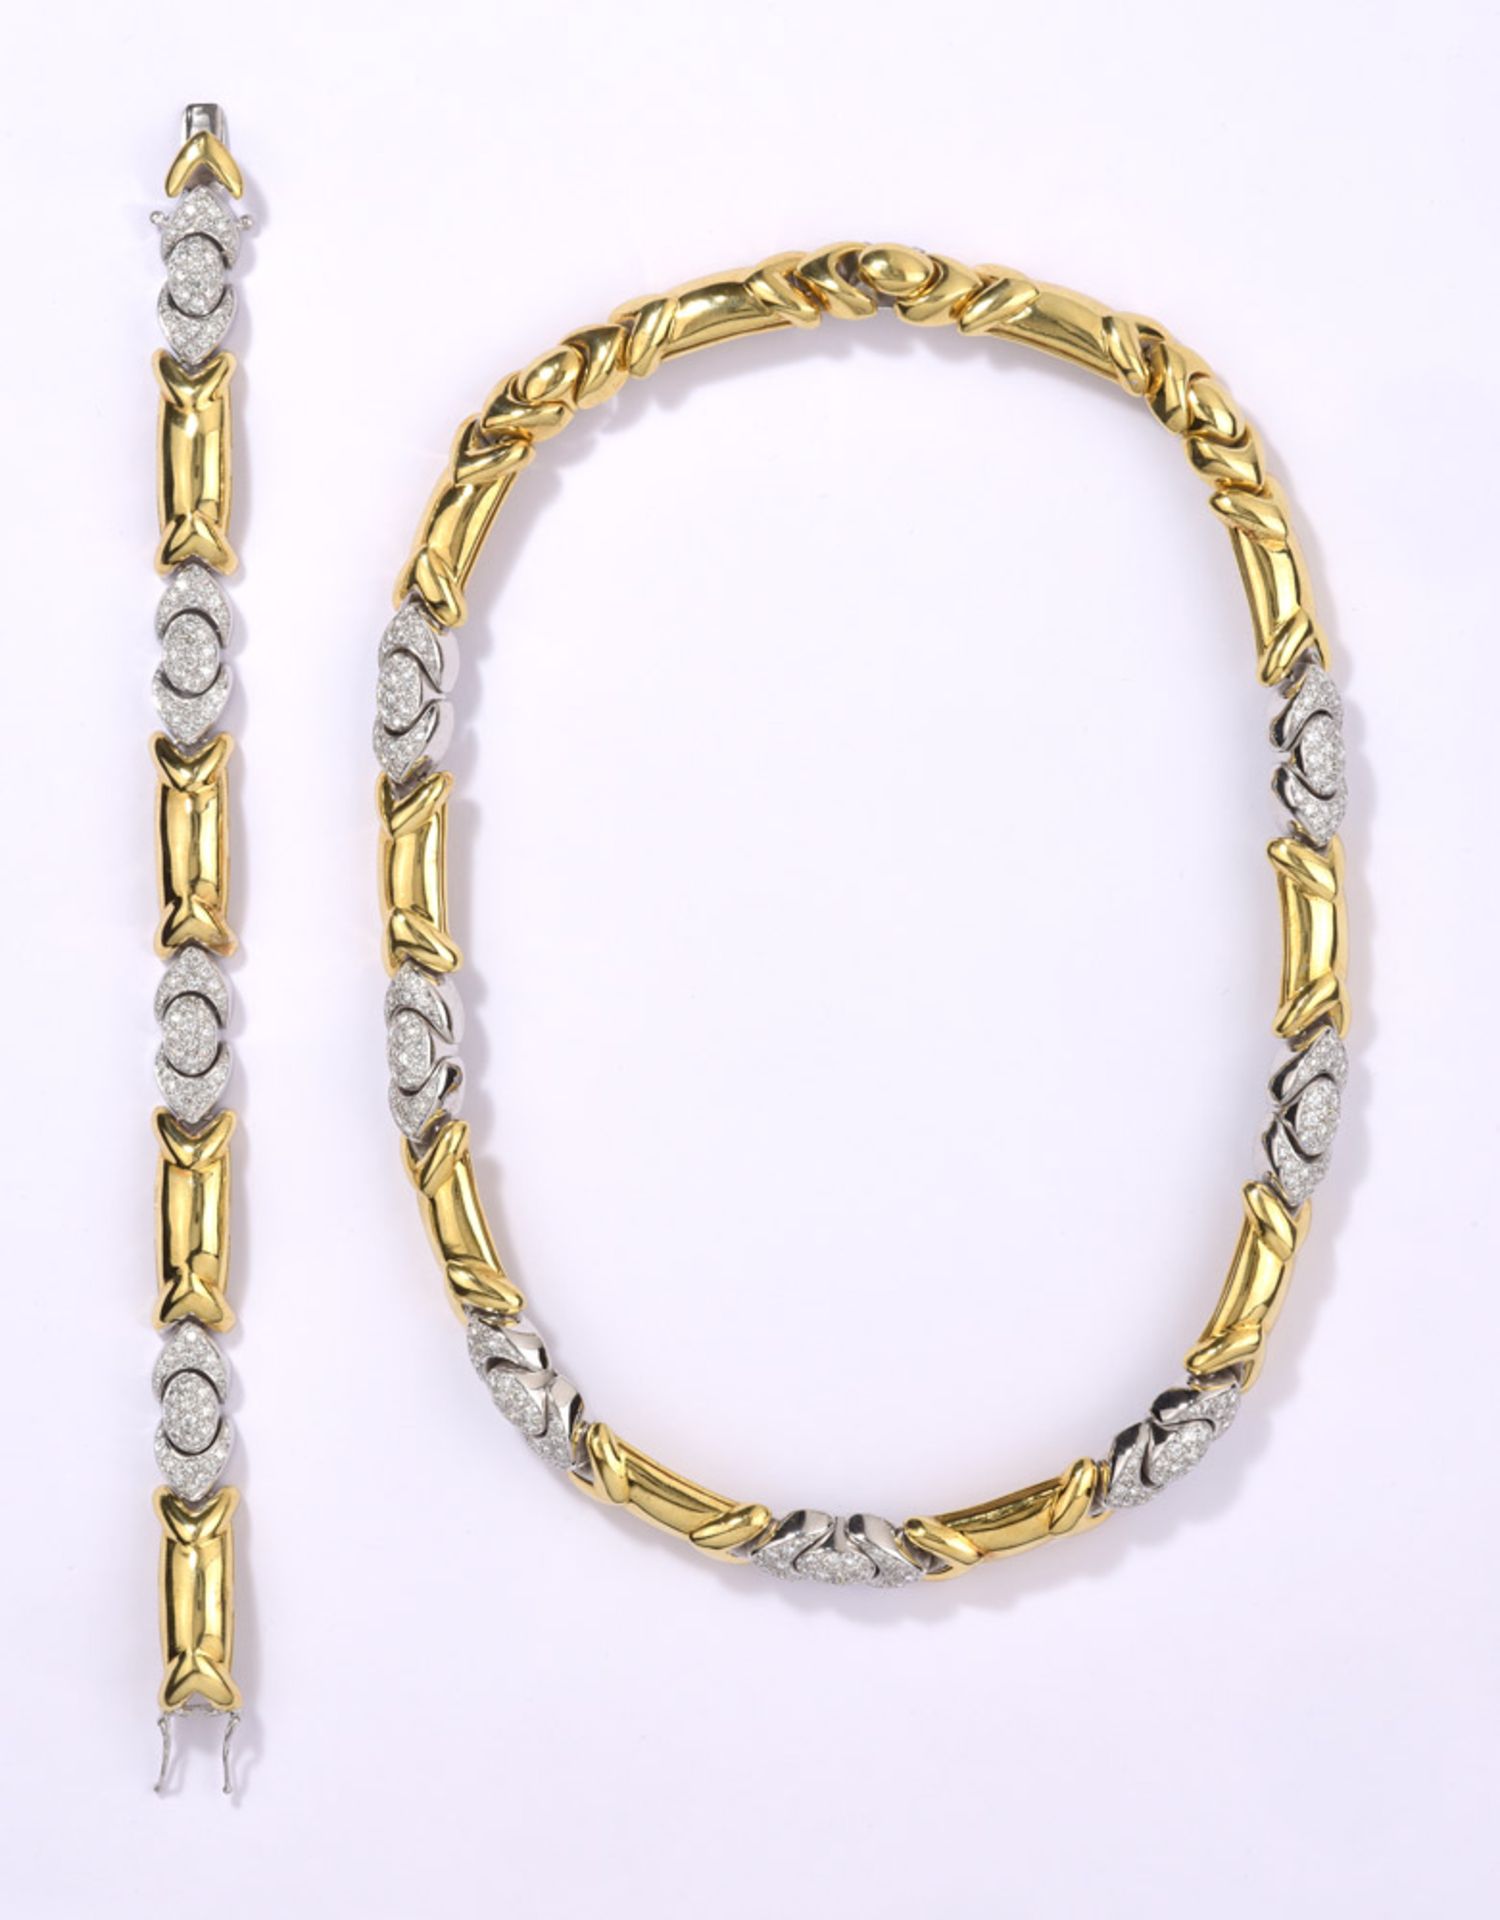 Collier und Armband750-Gelb-/Weißgold, Brillanten zus. 7,15 ct, top wesselton, lupenrein. Zus. 134